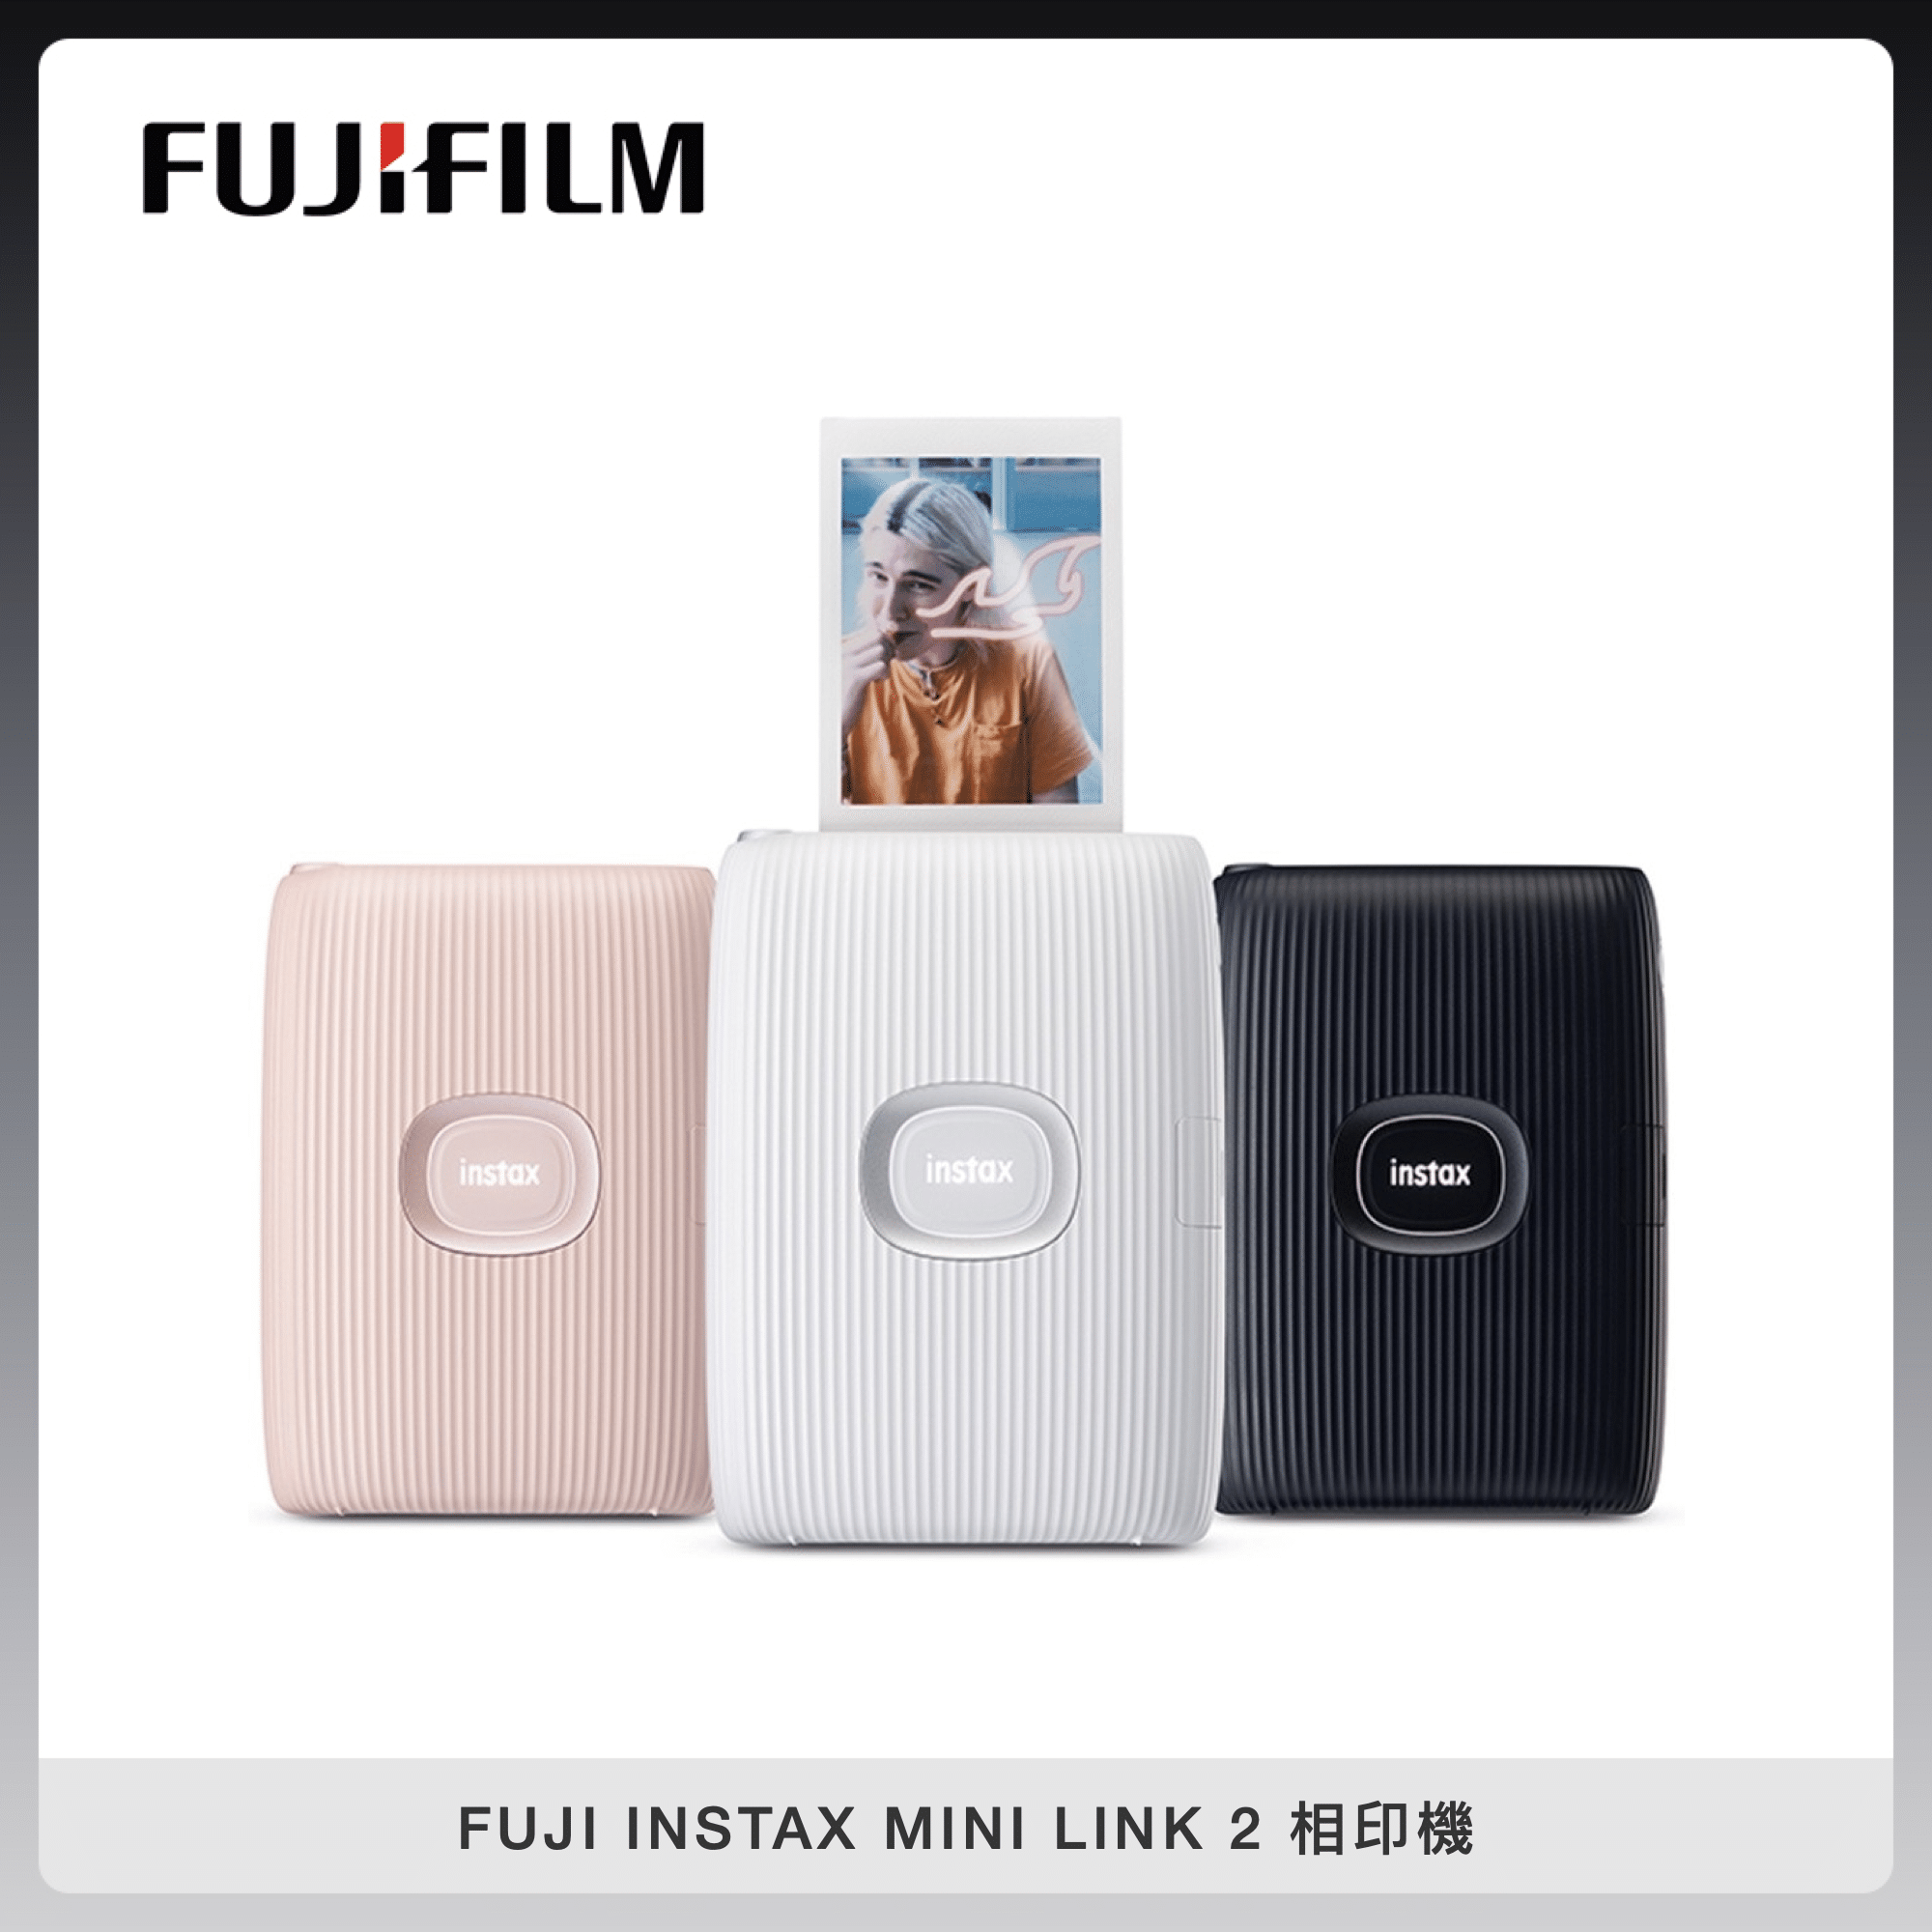 FUJIFILM 富士 INSTAX MINI LINK 2 手機印相機 拍立得 相印機 (三色選) 公司貨